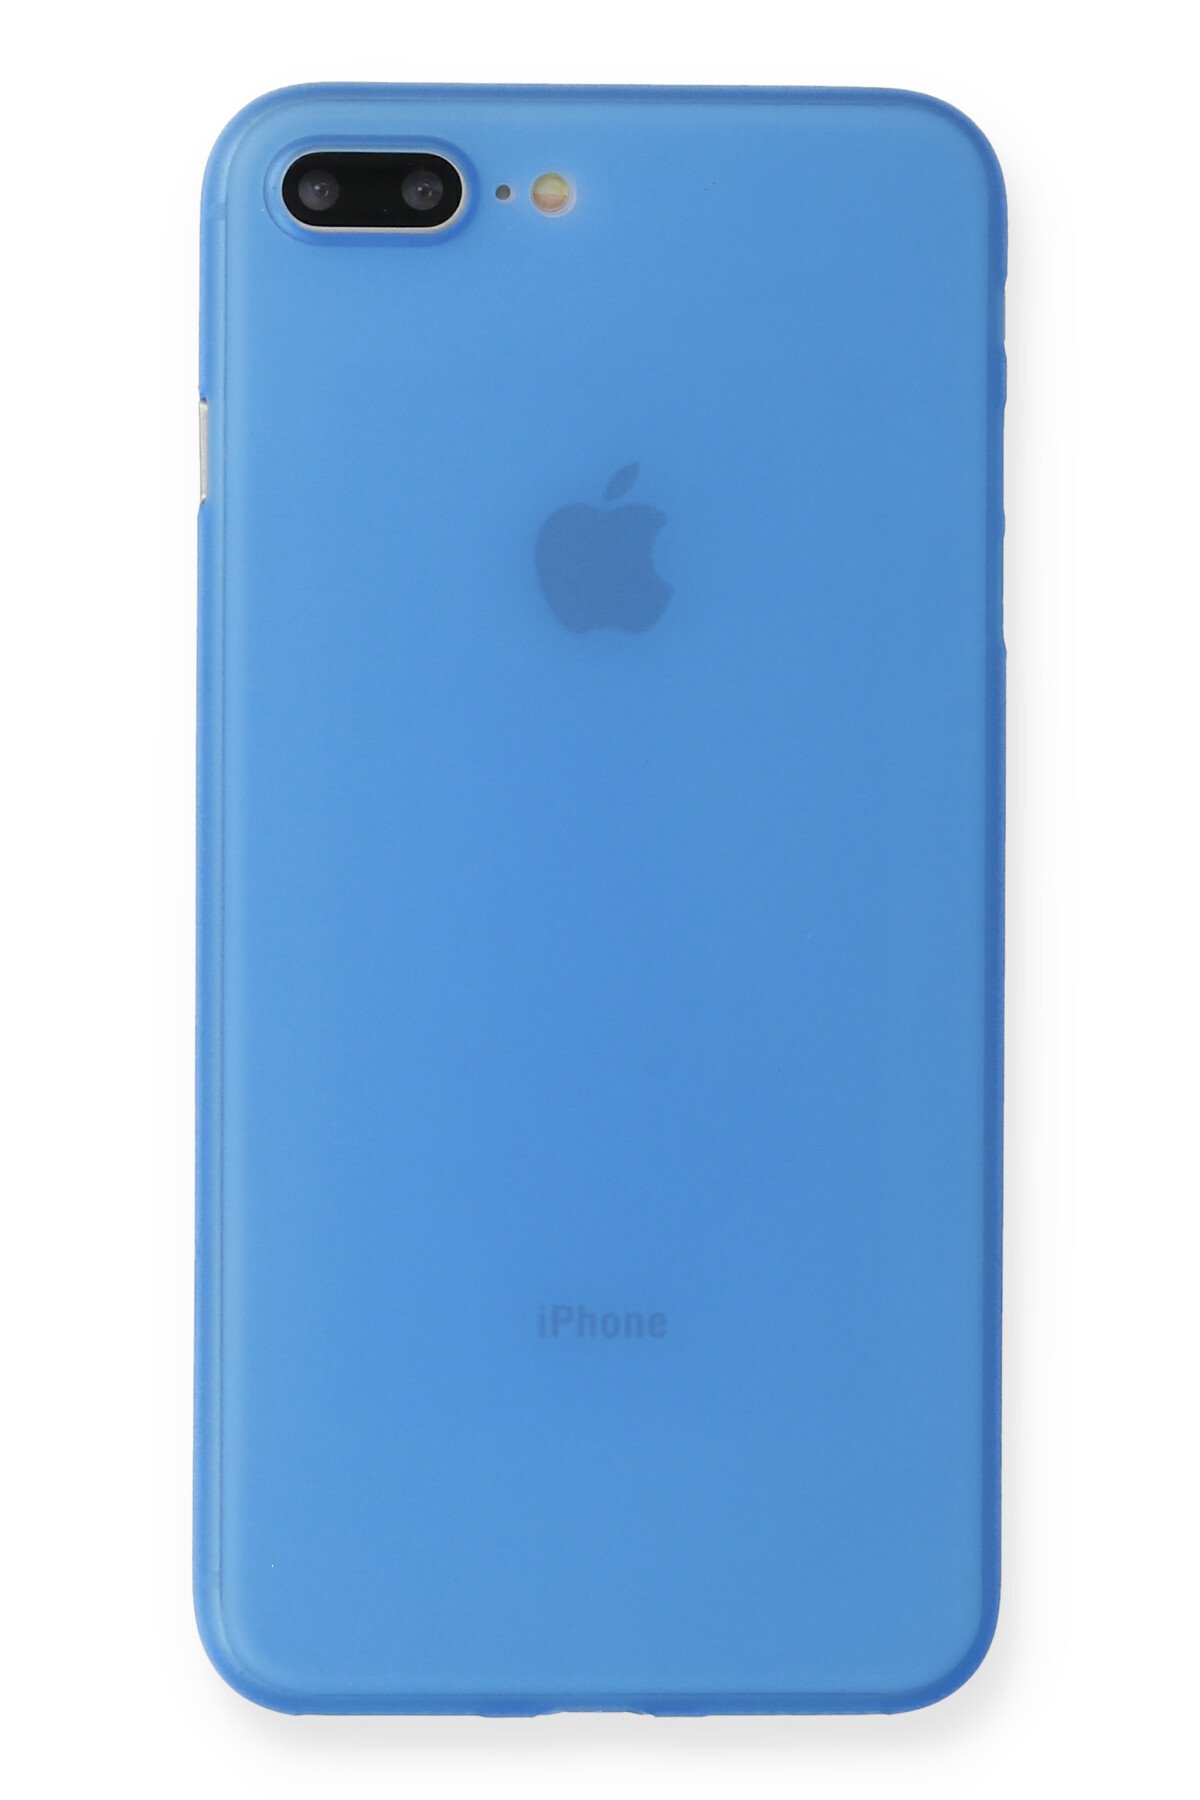 NewFace Newface iPhone 7 Plus Kılıf PP Ultra İnce Kapak - Mavi